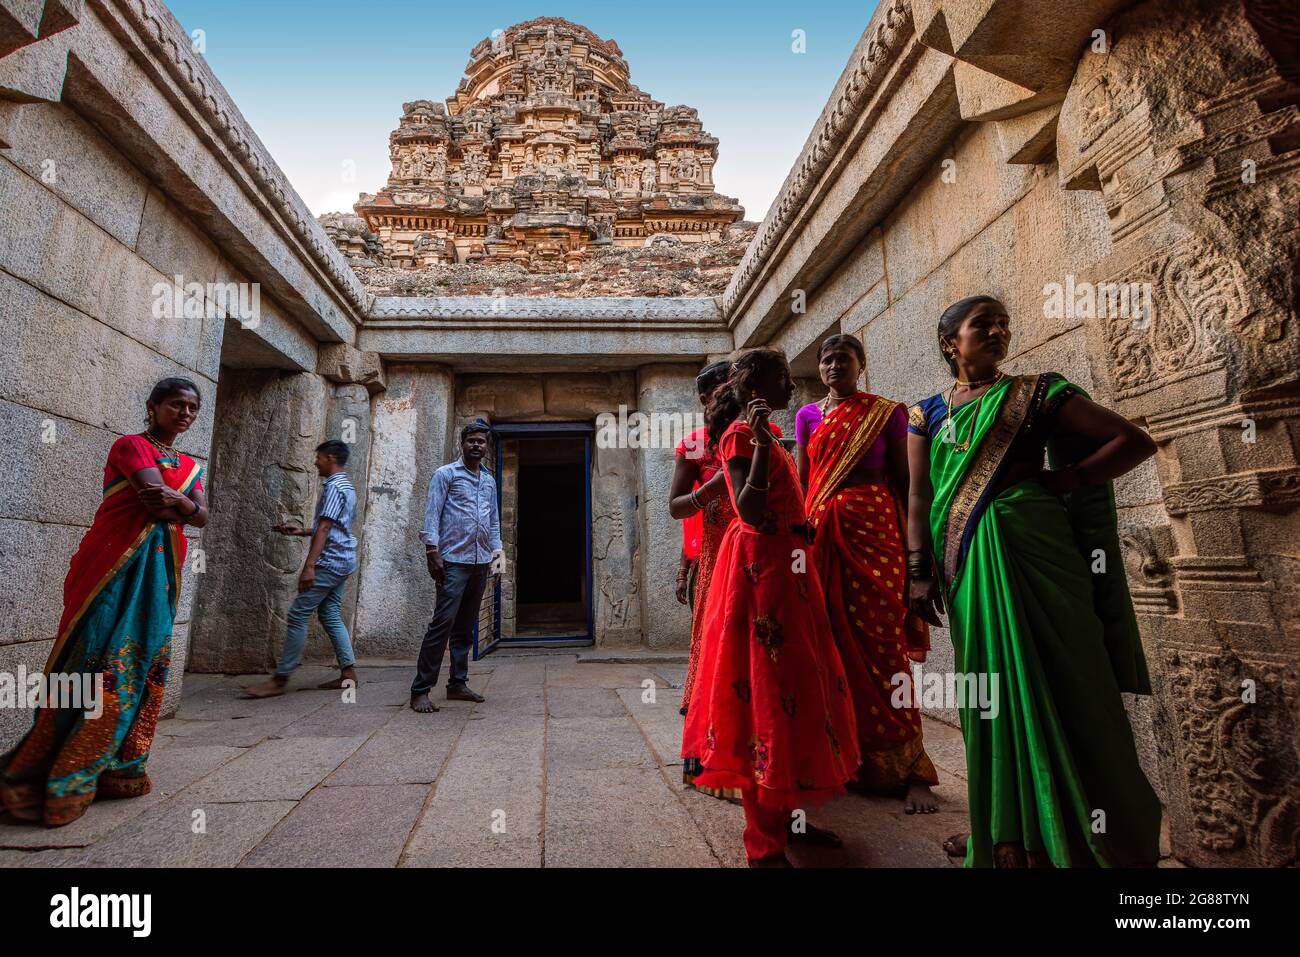 Hampi, Karnataka, India - 10 de enero de 2020: Templo Vijaya Vitthala. Bellamente tallada en una roca monolítica, un pedazo de la intrincada arquitectura marv Foto de stock